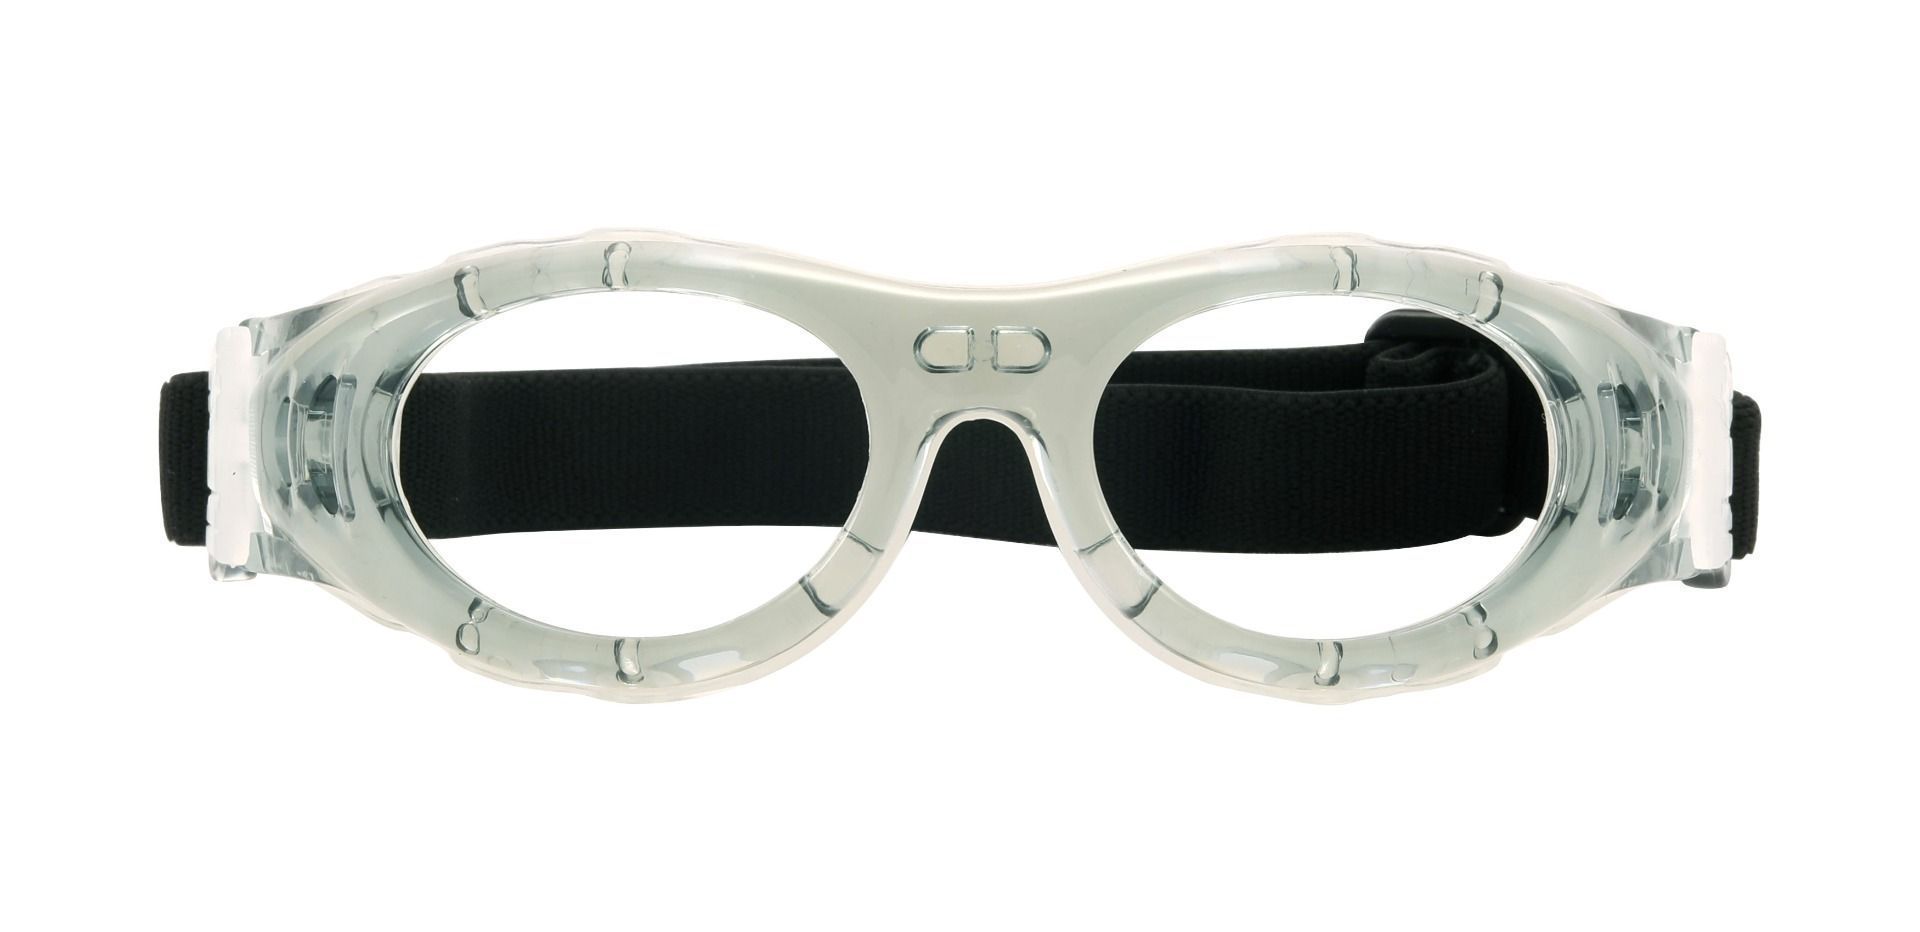 Decker Sports Goggles Prescription Glasses - Green